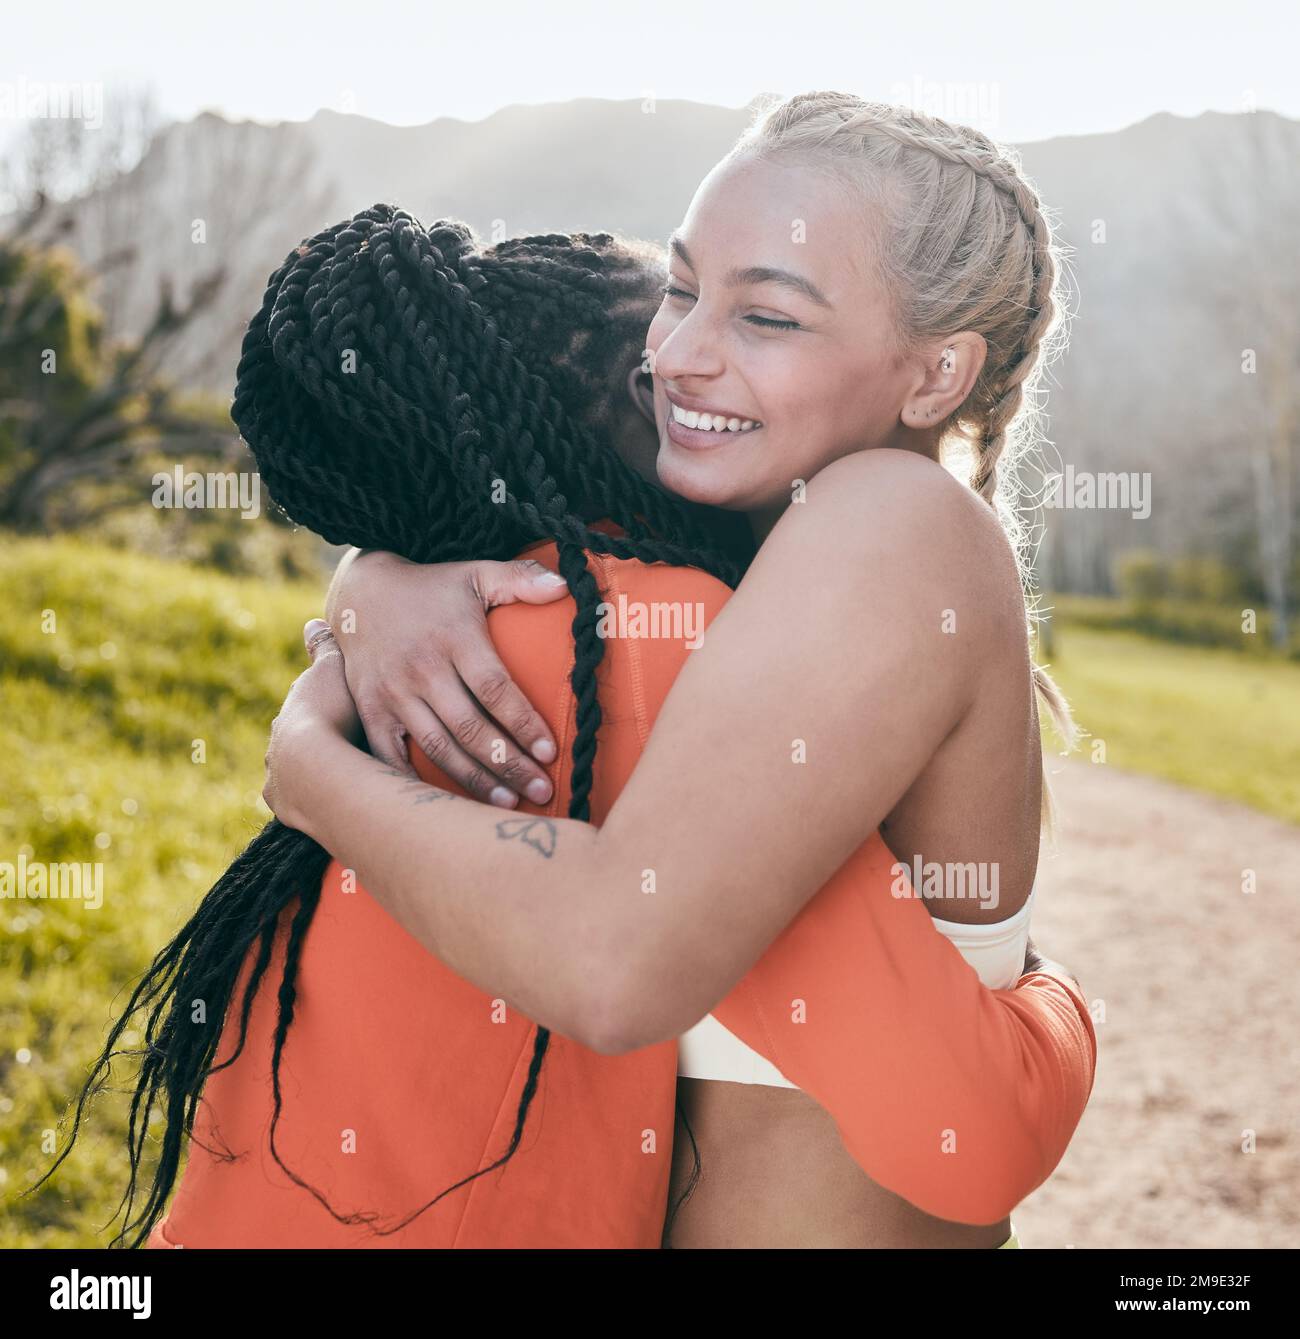 Estoy tan orgulloso de ti por lograr tu objetivo. una mujer joven atractiva de pie y abrazando a su amigo durante su entrenamiento al aire libre. Foto de stock